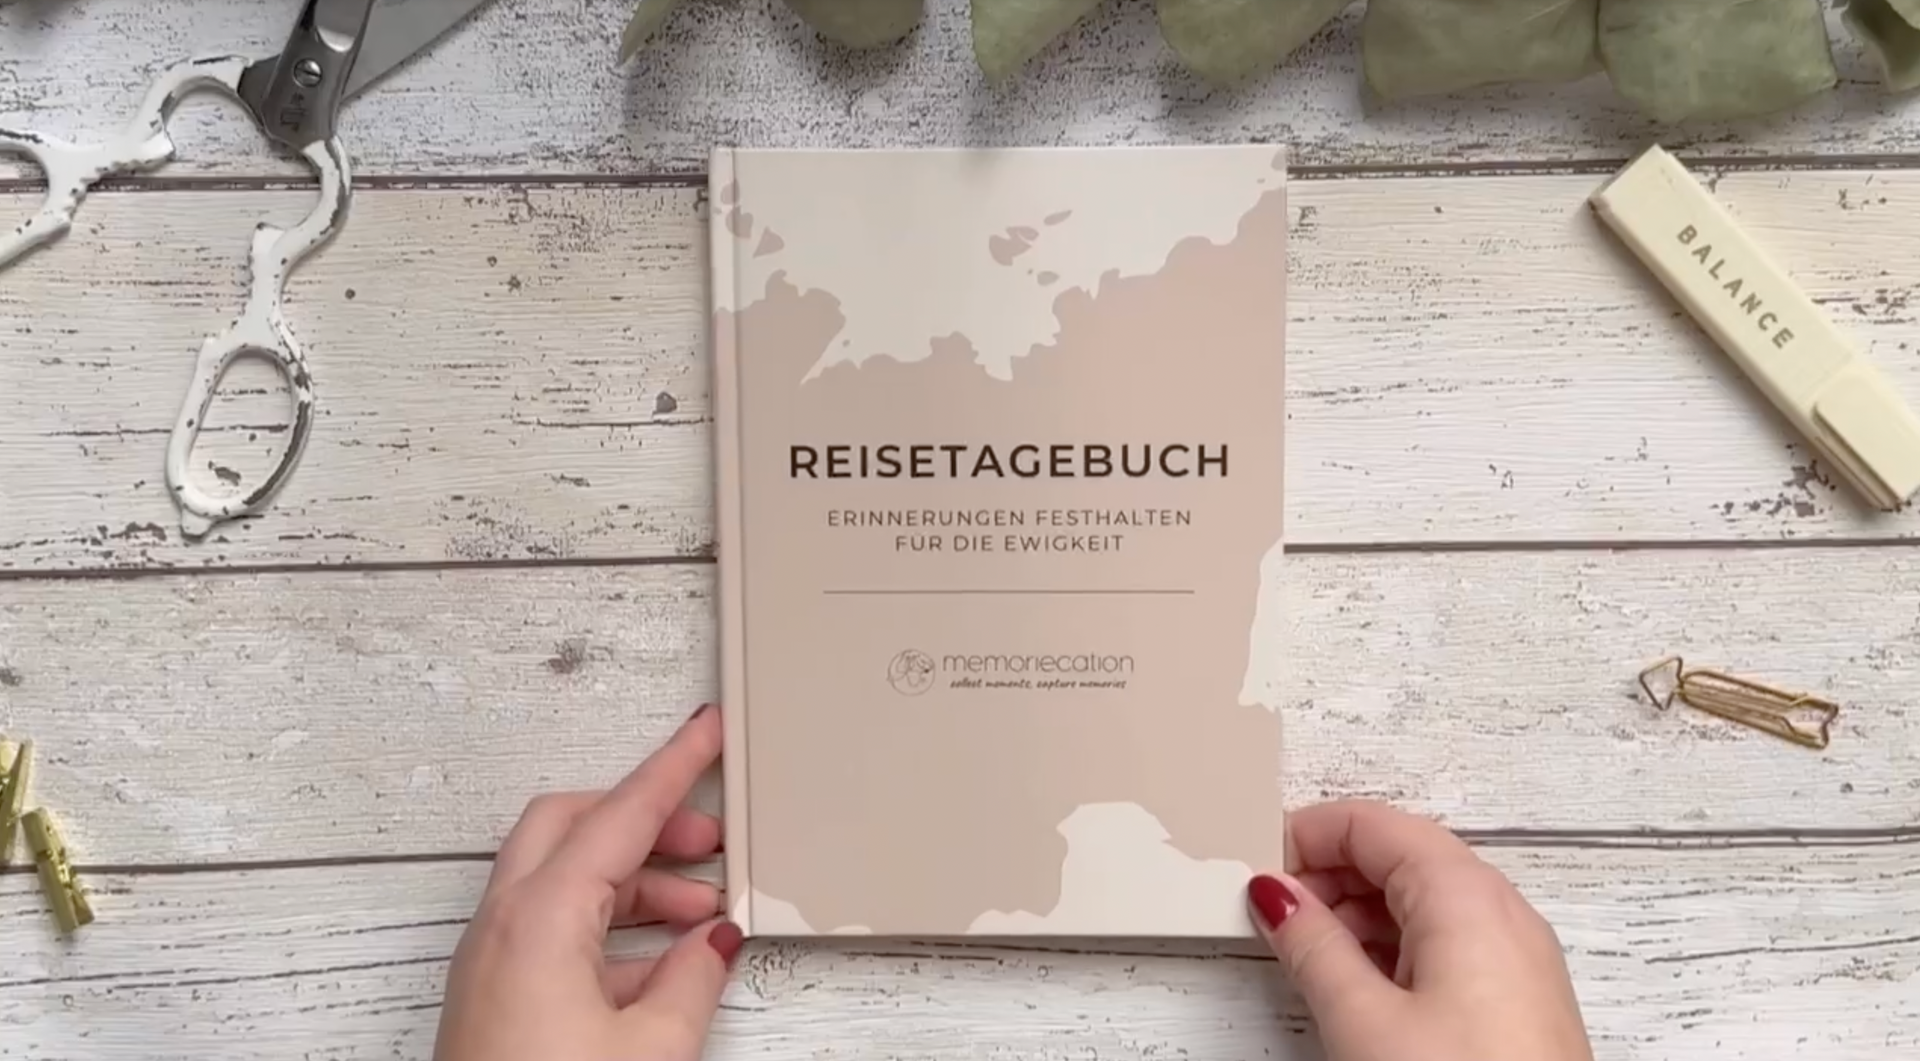 Video laden: Reisetagebuch memoriecation Reise Tagebuch Reisen Geschenk Erinnerungen festhalten Weltenbummler